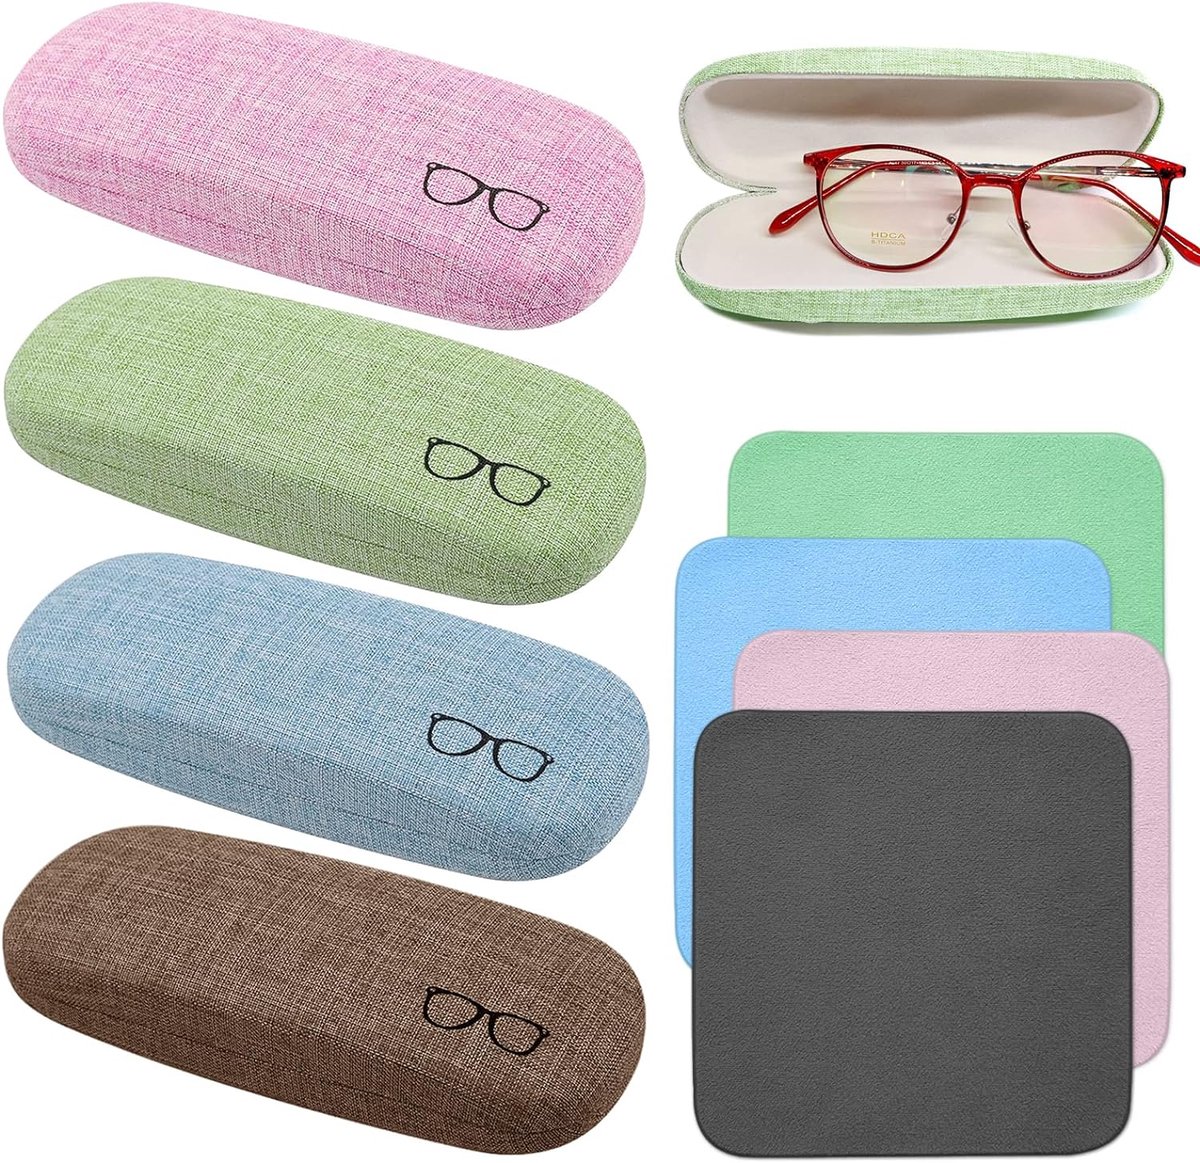 Brillenkoker, 4 stuks linnen stoffen glazen case, draagbare harde brillenkoker voor brillen en zonnebrillen (4 kleuren), blauw, groen, roze en koffie